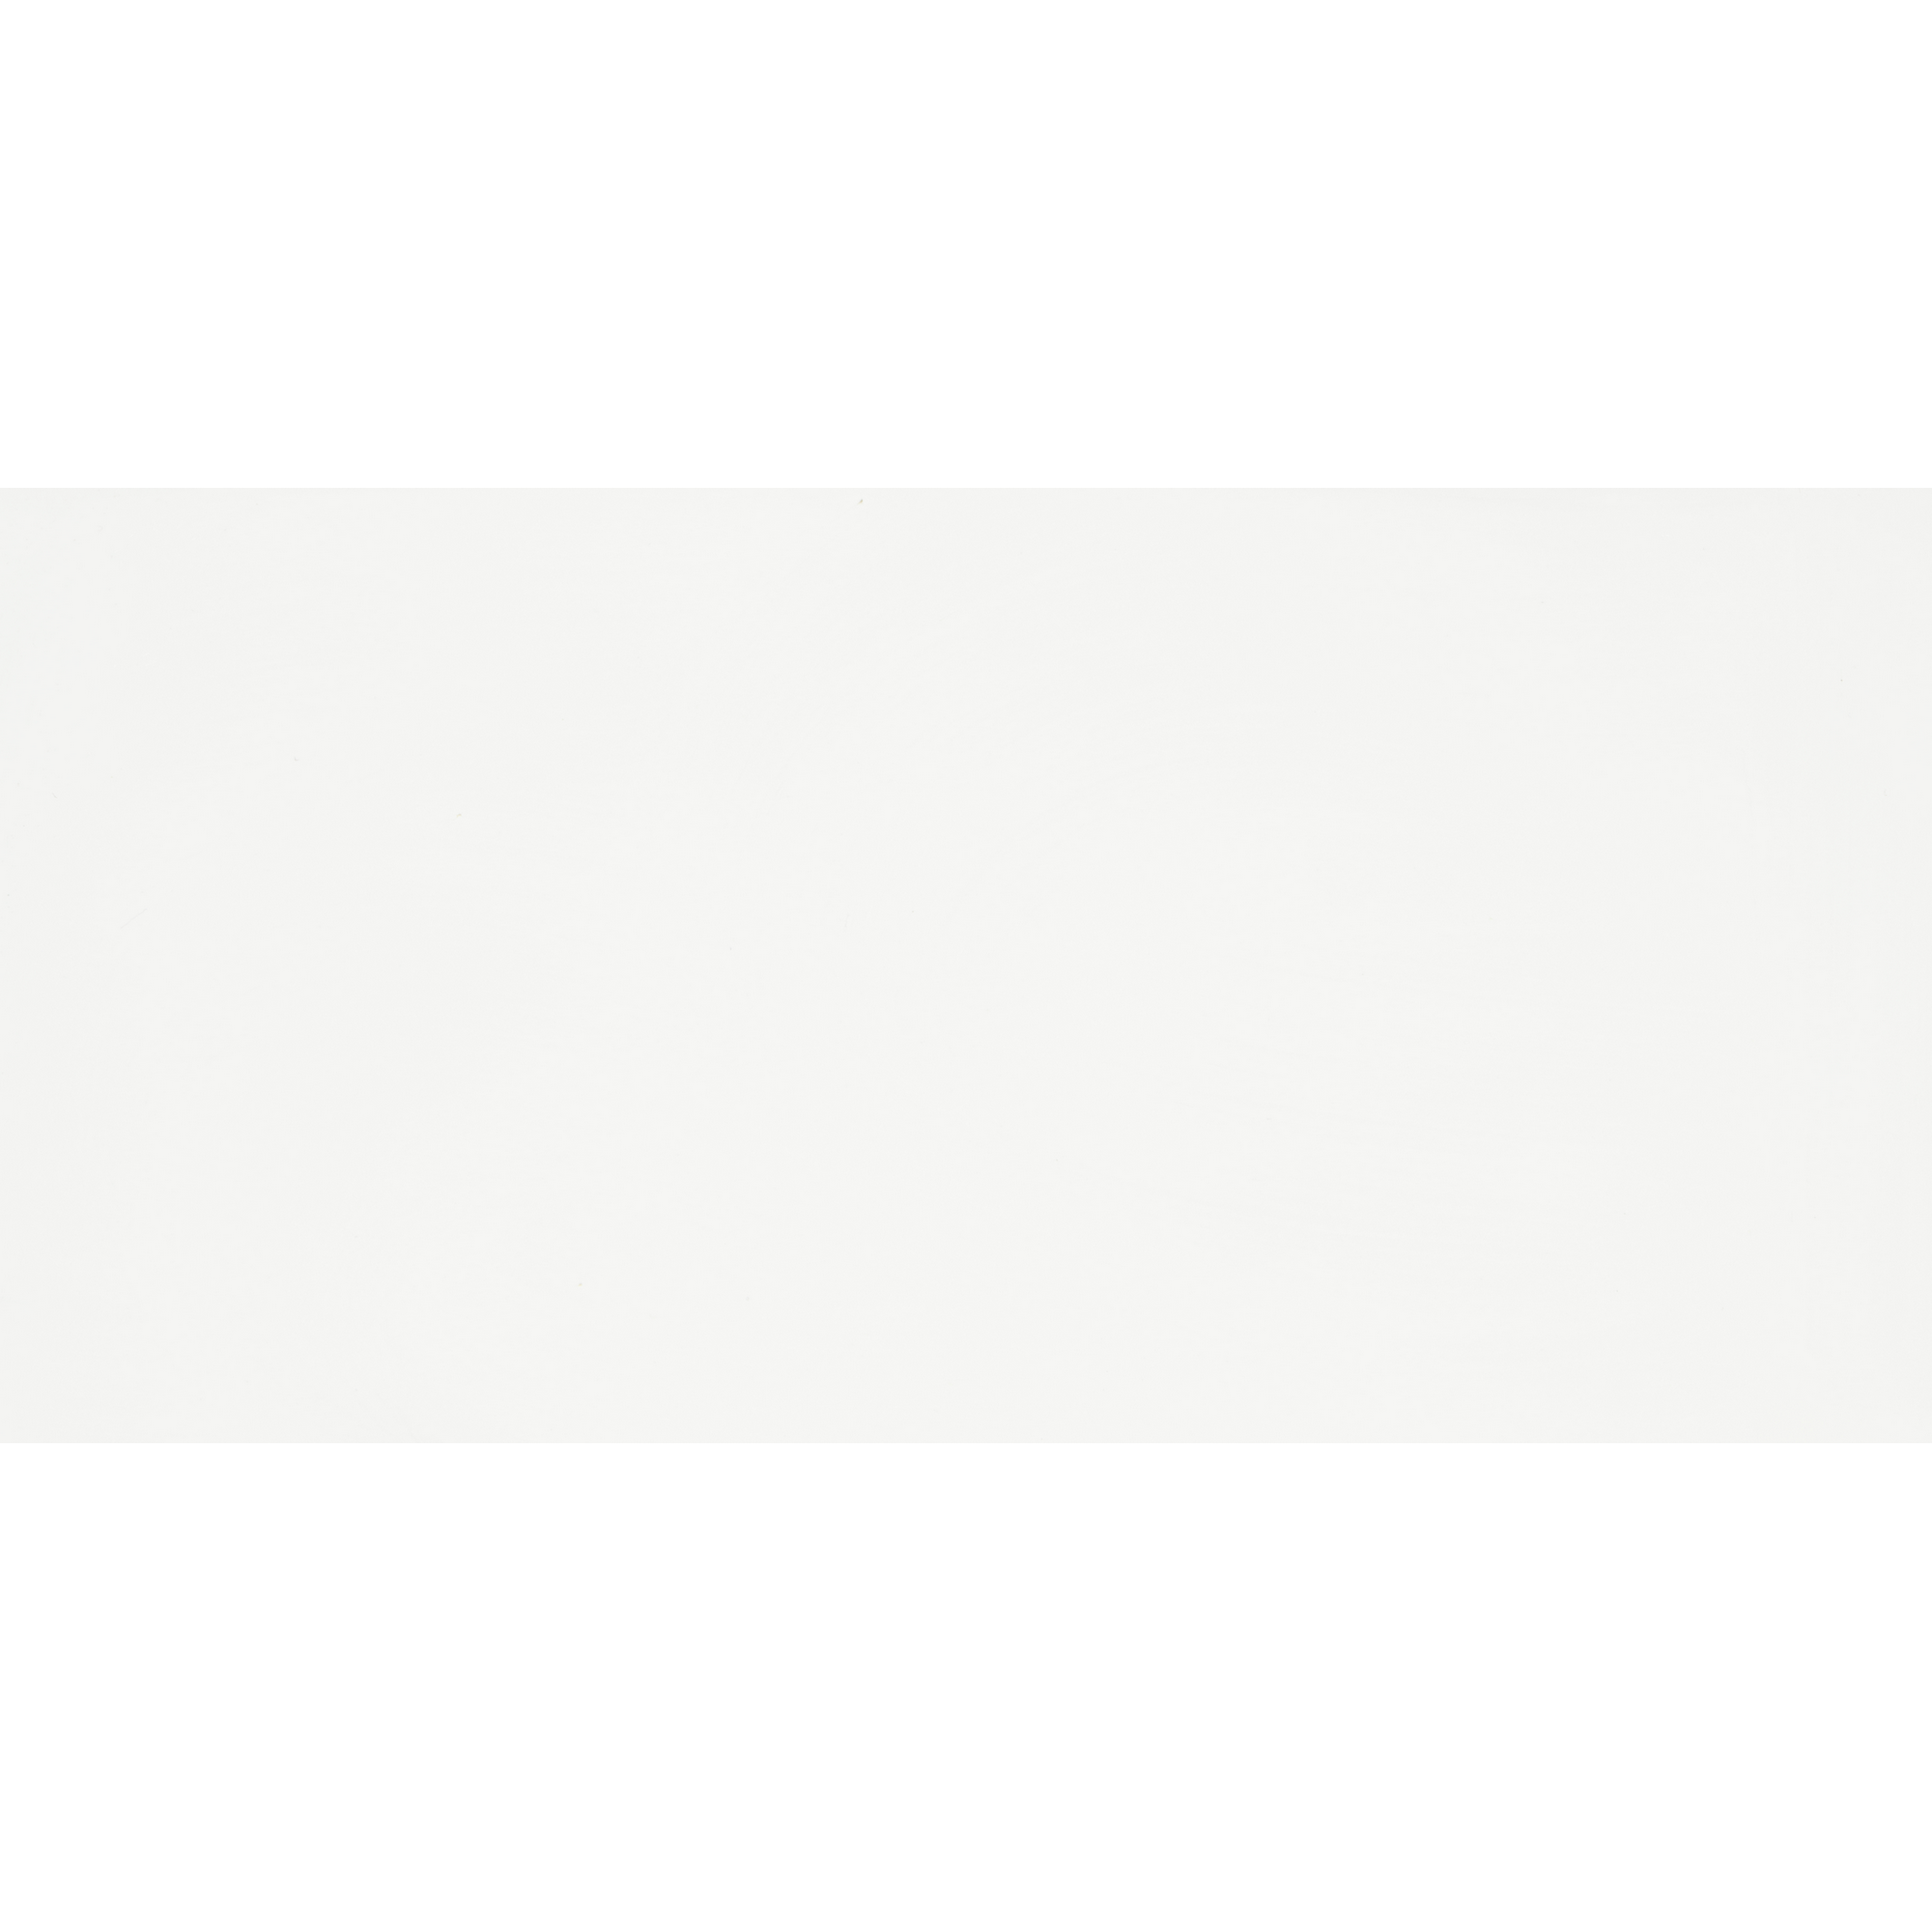 Wandfliese 'Appeal' Steingut weiß matt/glänzend 30 x 60 cm + product picture